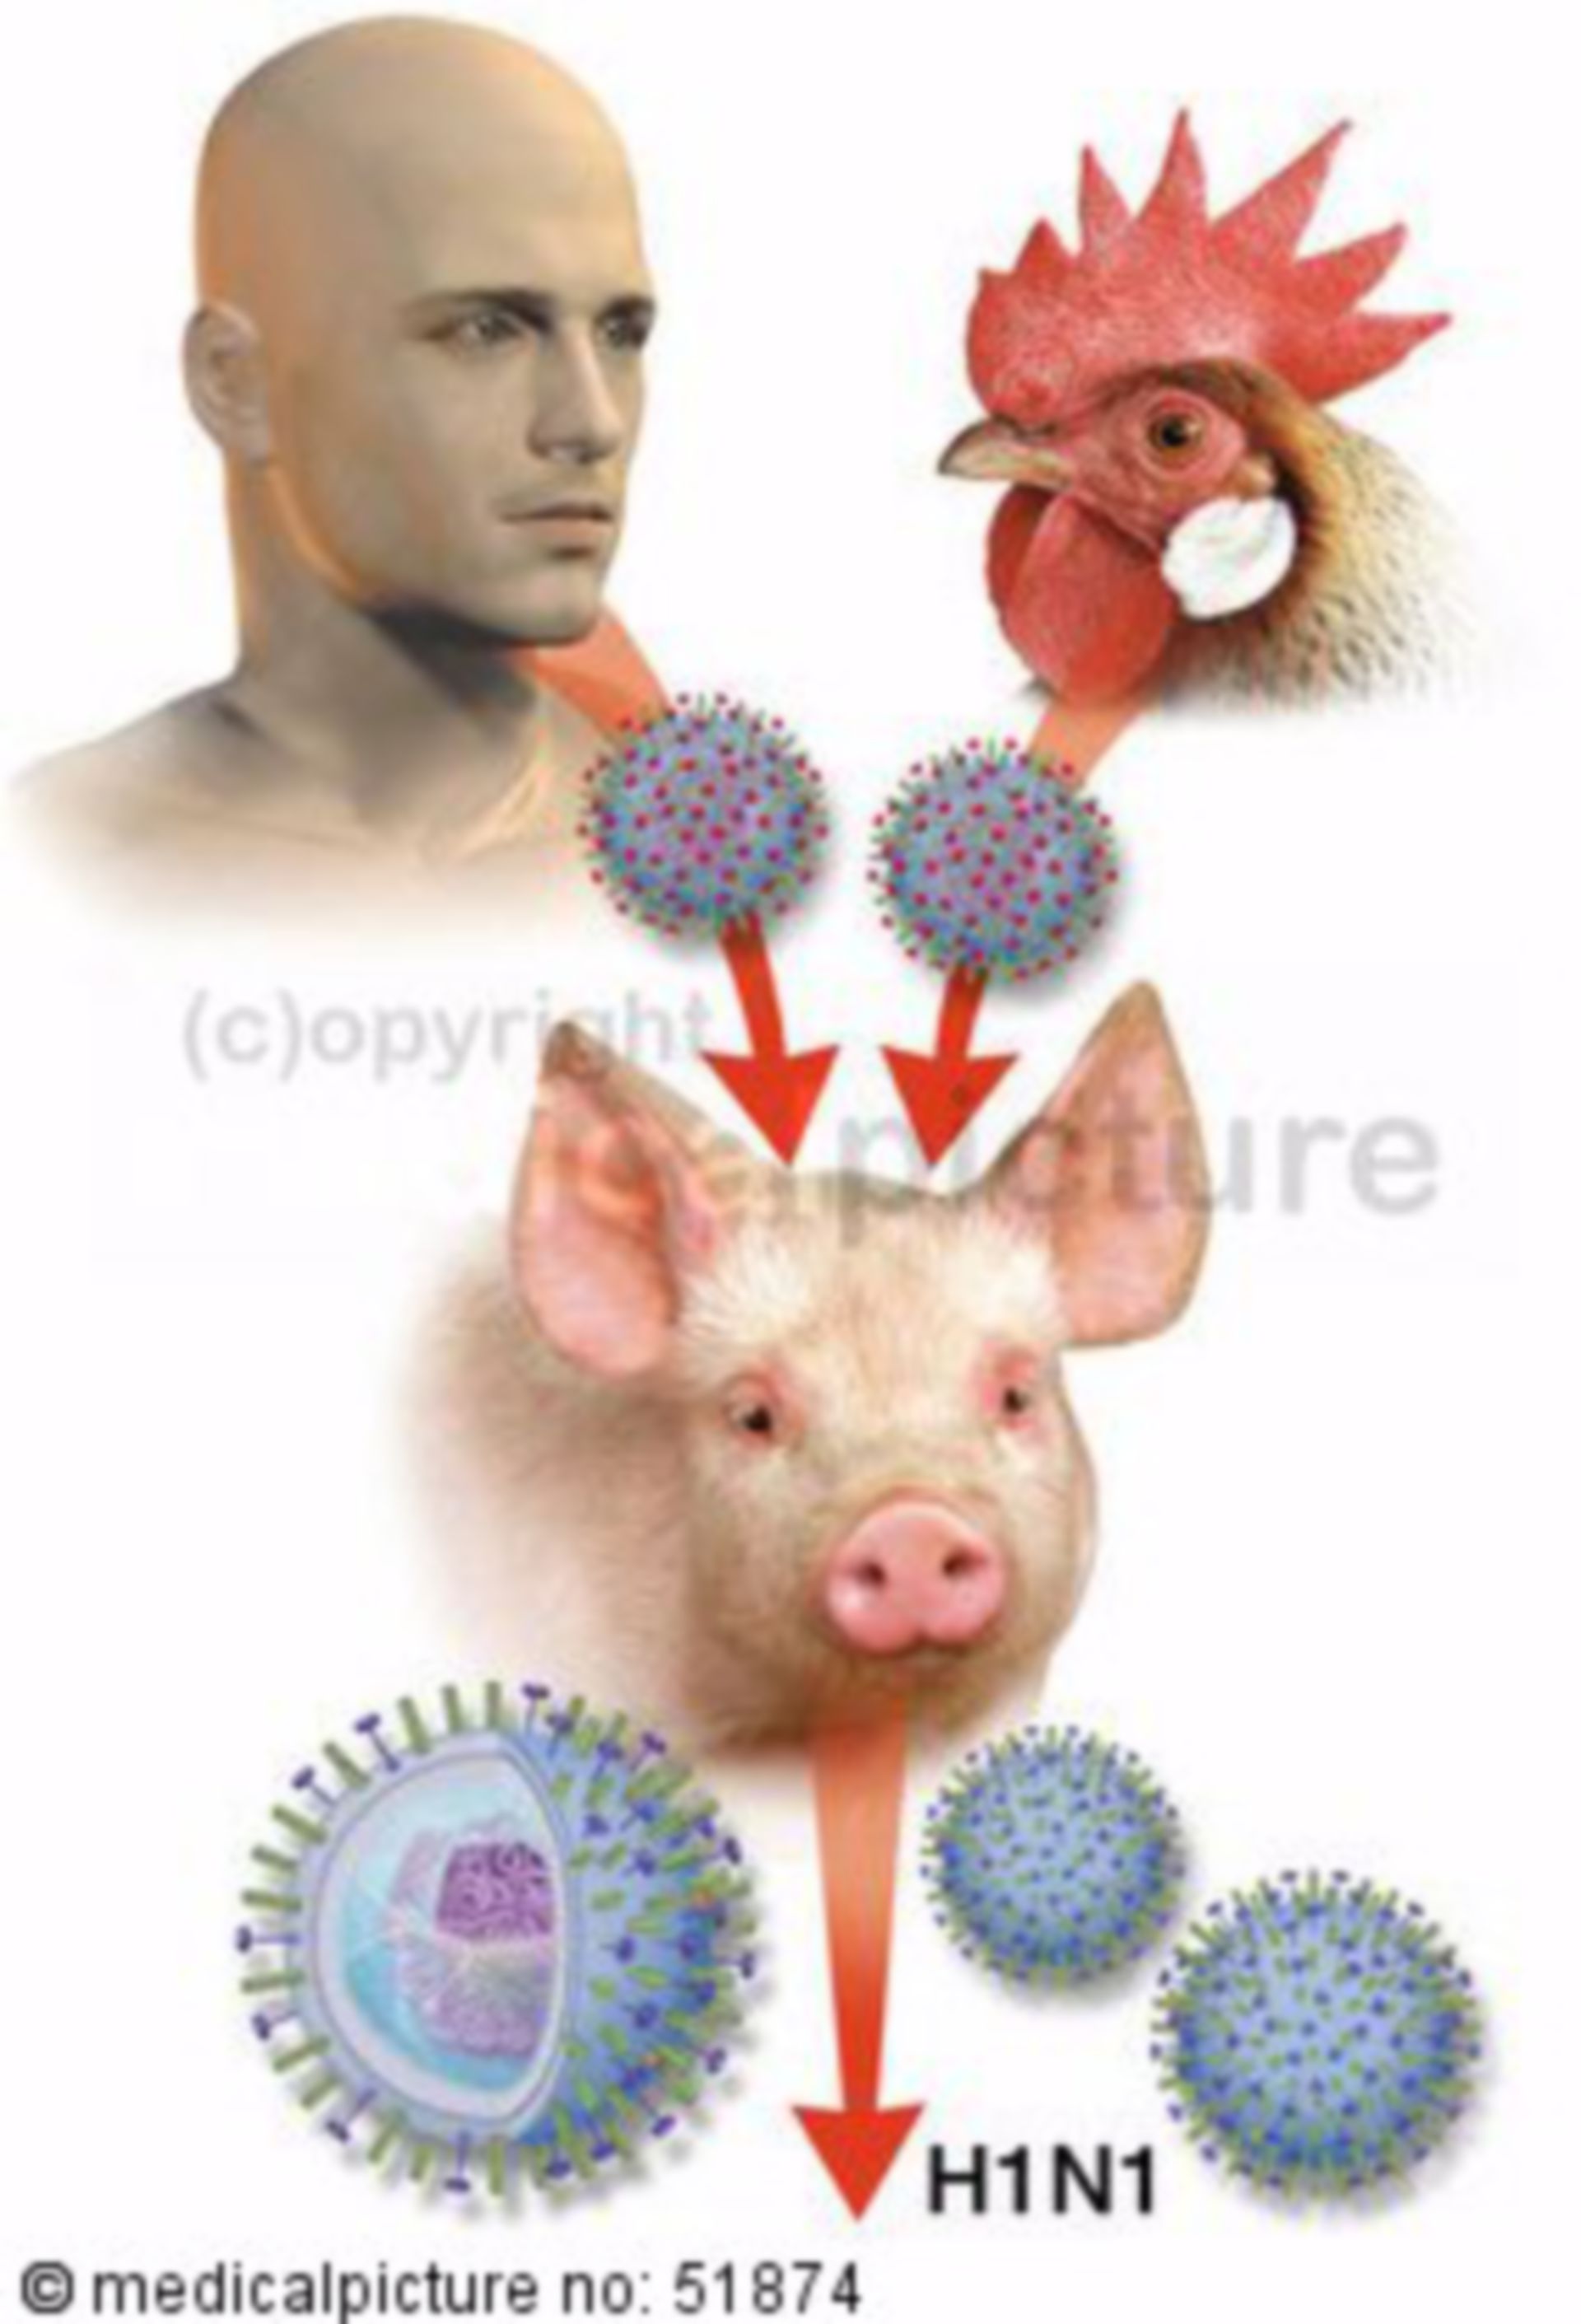 Variation of the pig flu virus H1N1